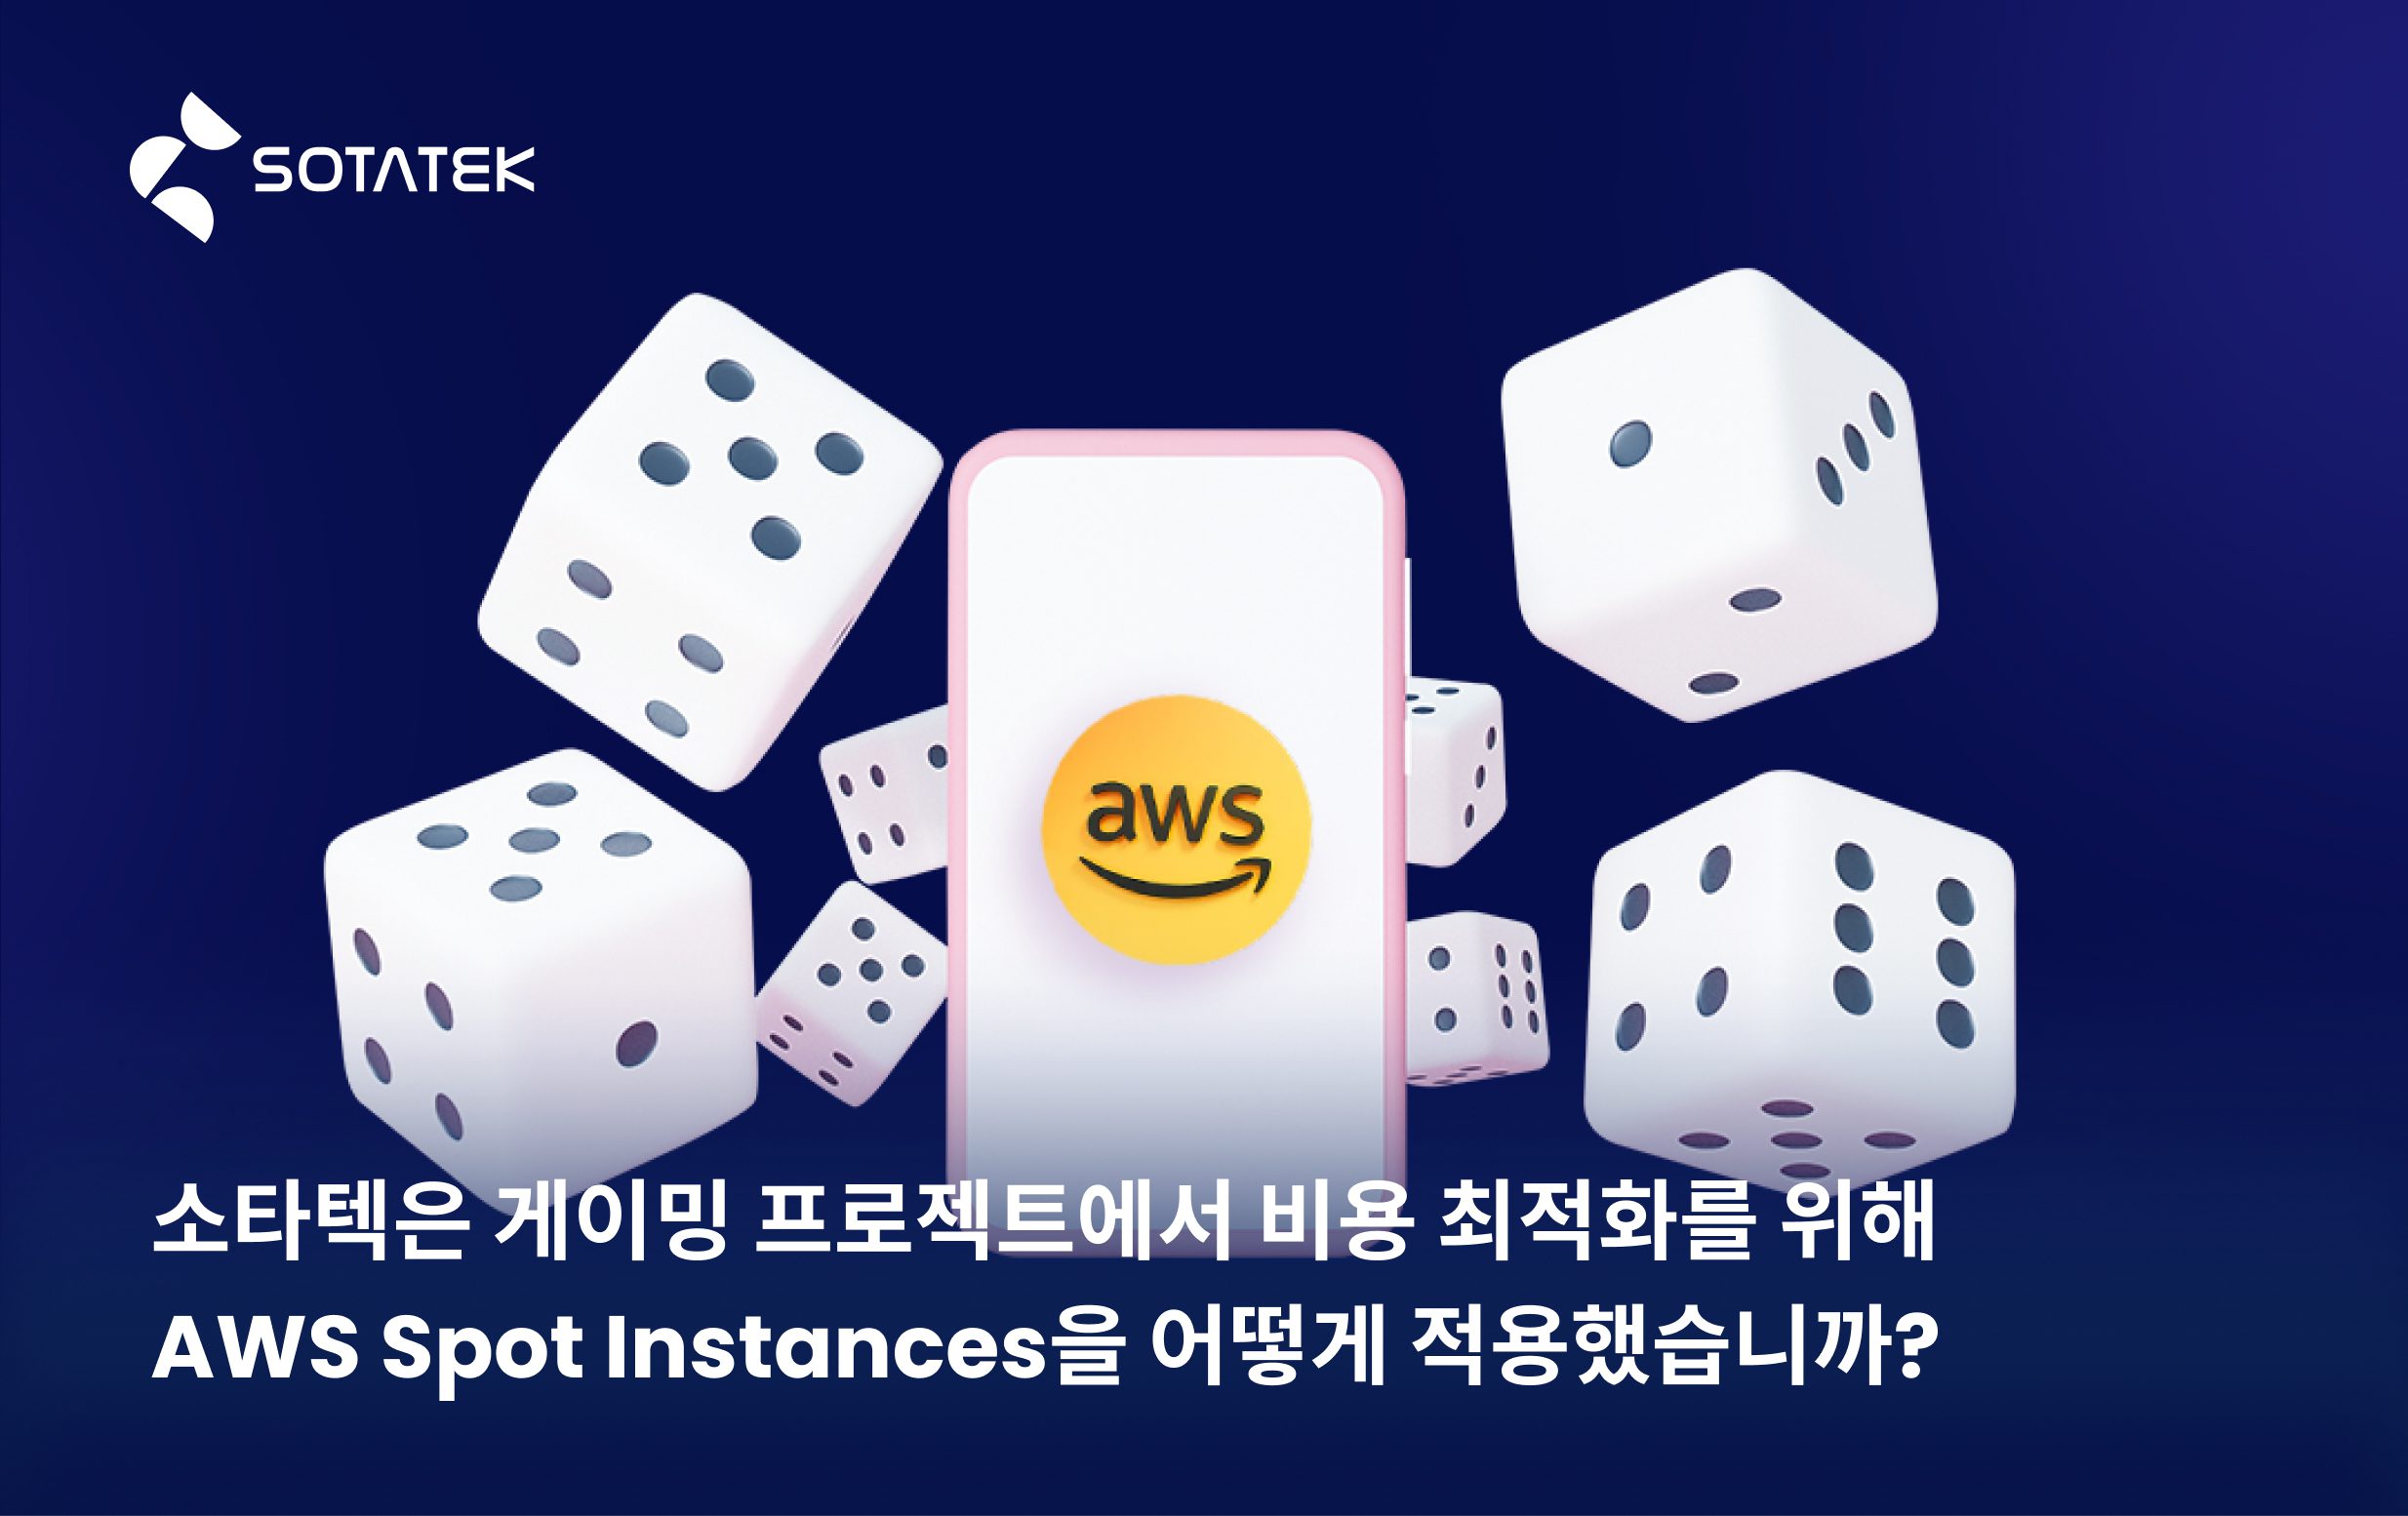 소타텍은 게이밍 프로젝트에서 비용 최적화를 위해 AWS Spot Instances을 어떻게 적용했습니까?